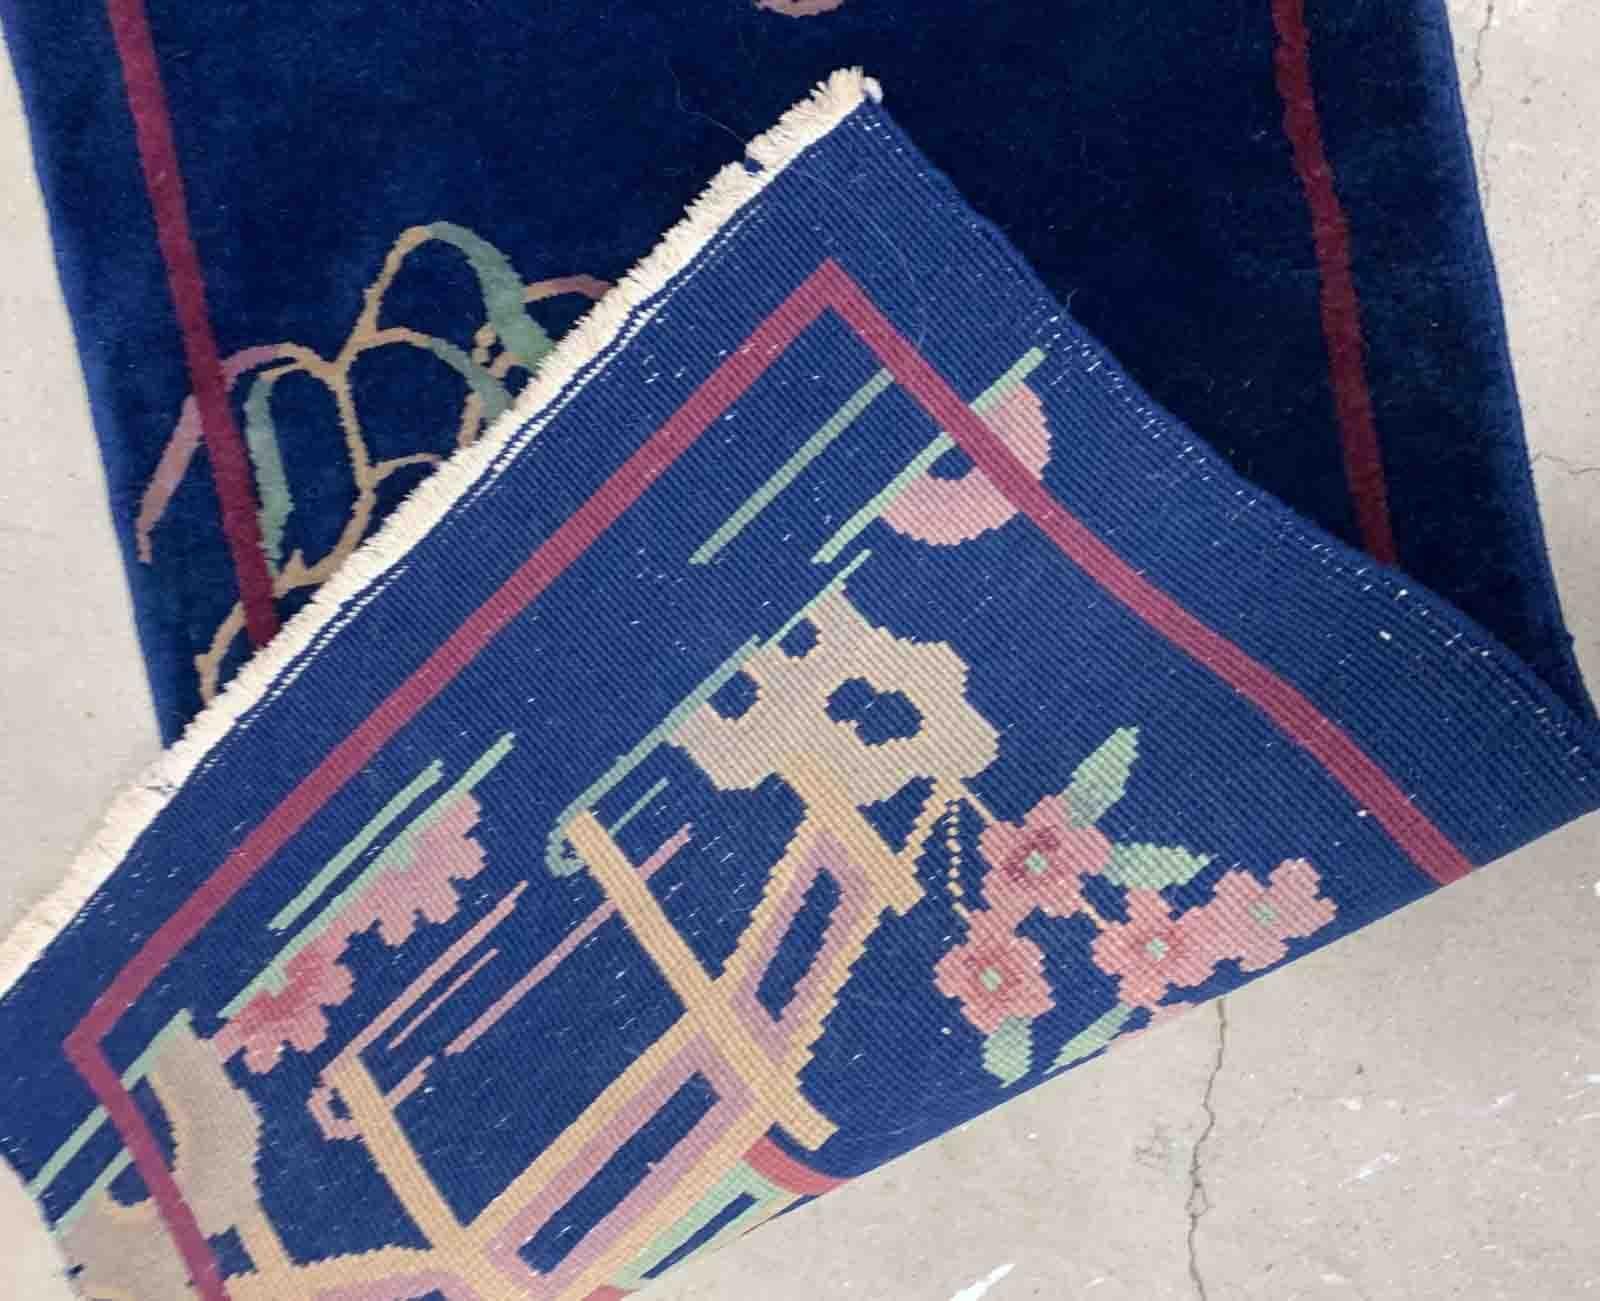 Handgefertigter antiker chinesischer Art-Déco-Teppich in tiefblauem Farbton. Der Teppich stammt aus dem Anfang des 20. Jahrhunderts und ist im Originalzustand. 

-Zustand: original gut,

-CIRCA: 1920er Jahre,

-Größe: 2,1' x 3,10' (64cm x